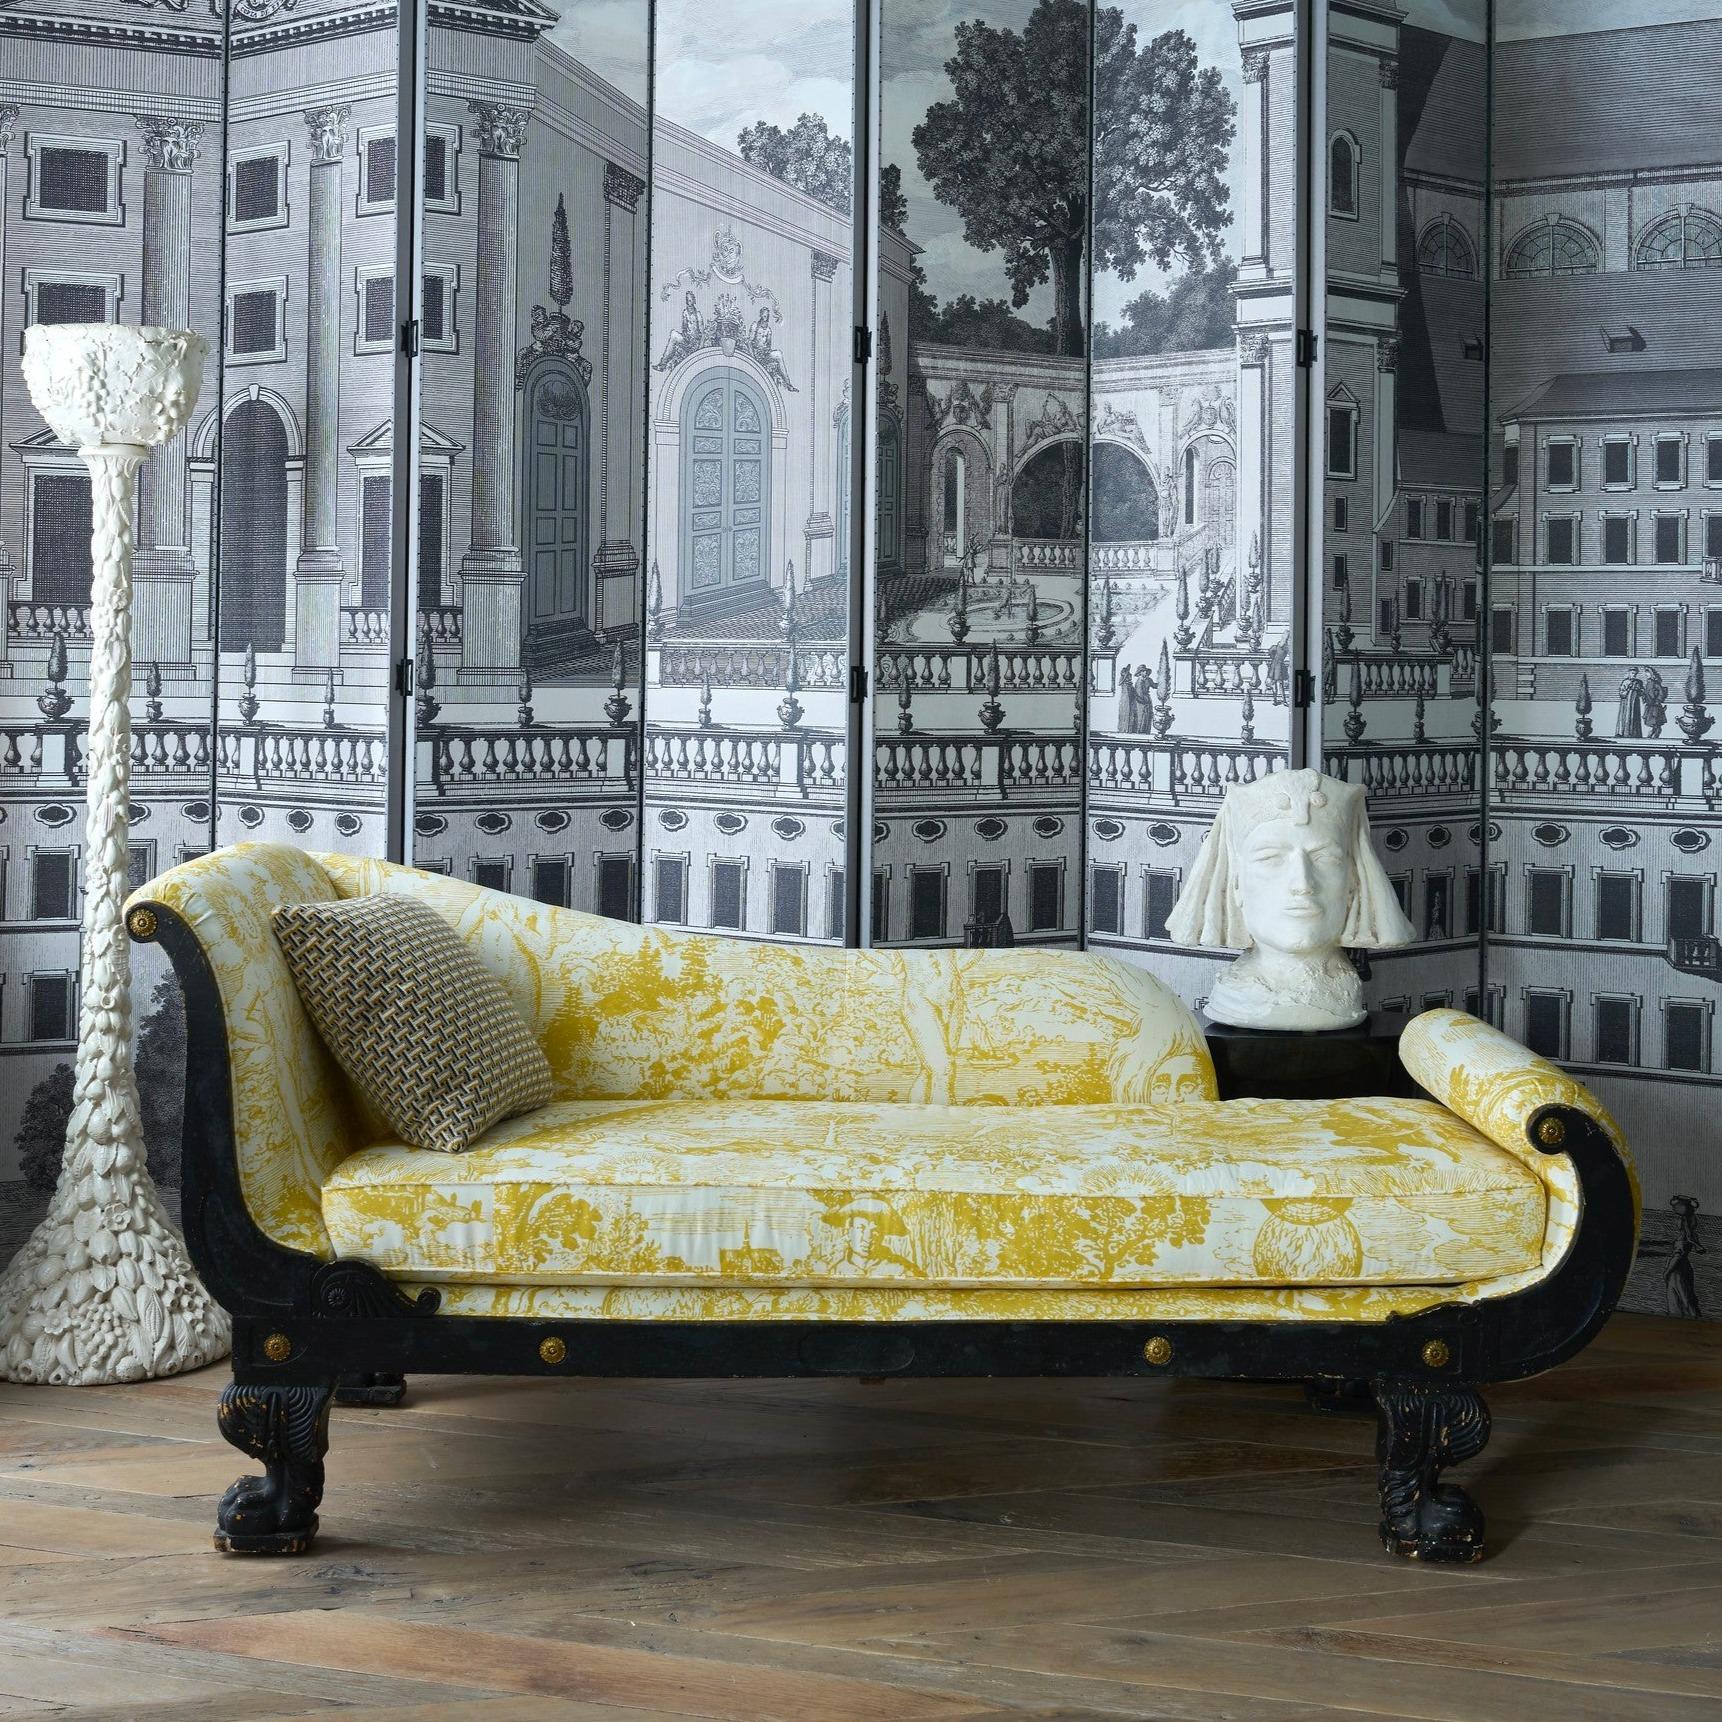 Eine amerikanische Empire-Chaise aus dem 19. Jahrhundert, neu gepolstert mit Schumacher Johnson Hartig Libertine Yellow Modern Toile Chaise. Dieser schwere gelb-weiße Baumwollstoff ist ein mehrschichtiges, mystisch angehauchtes Toile auf der